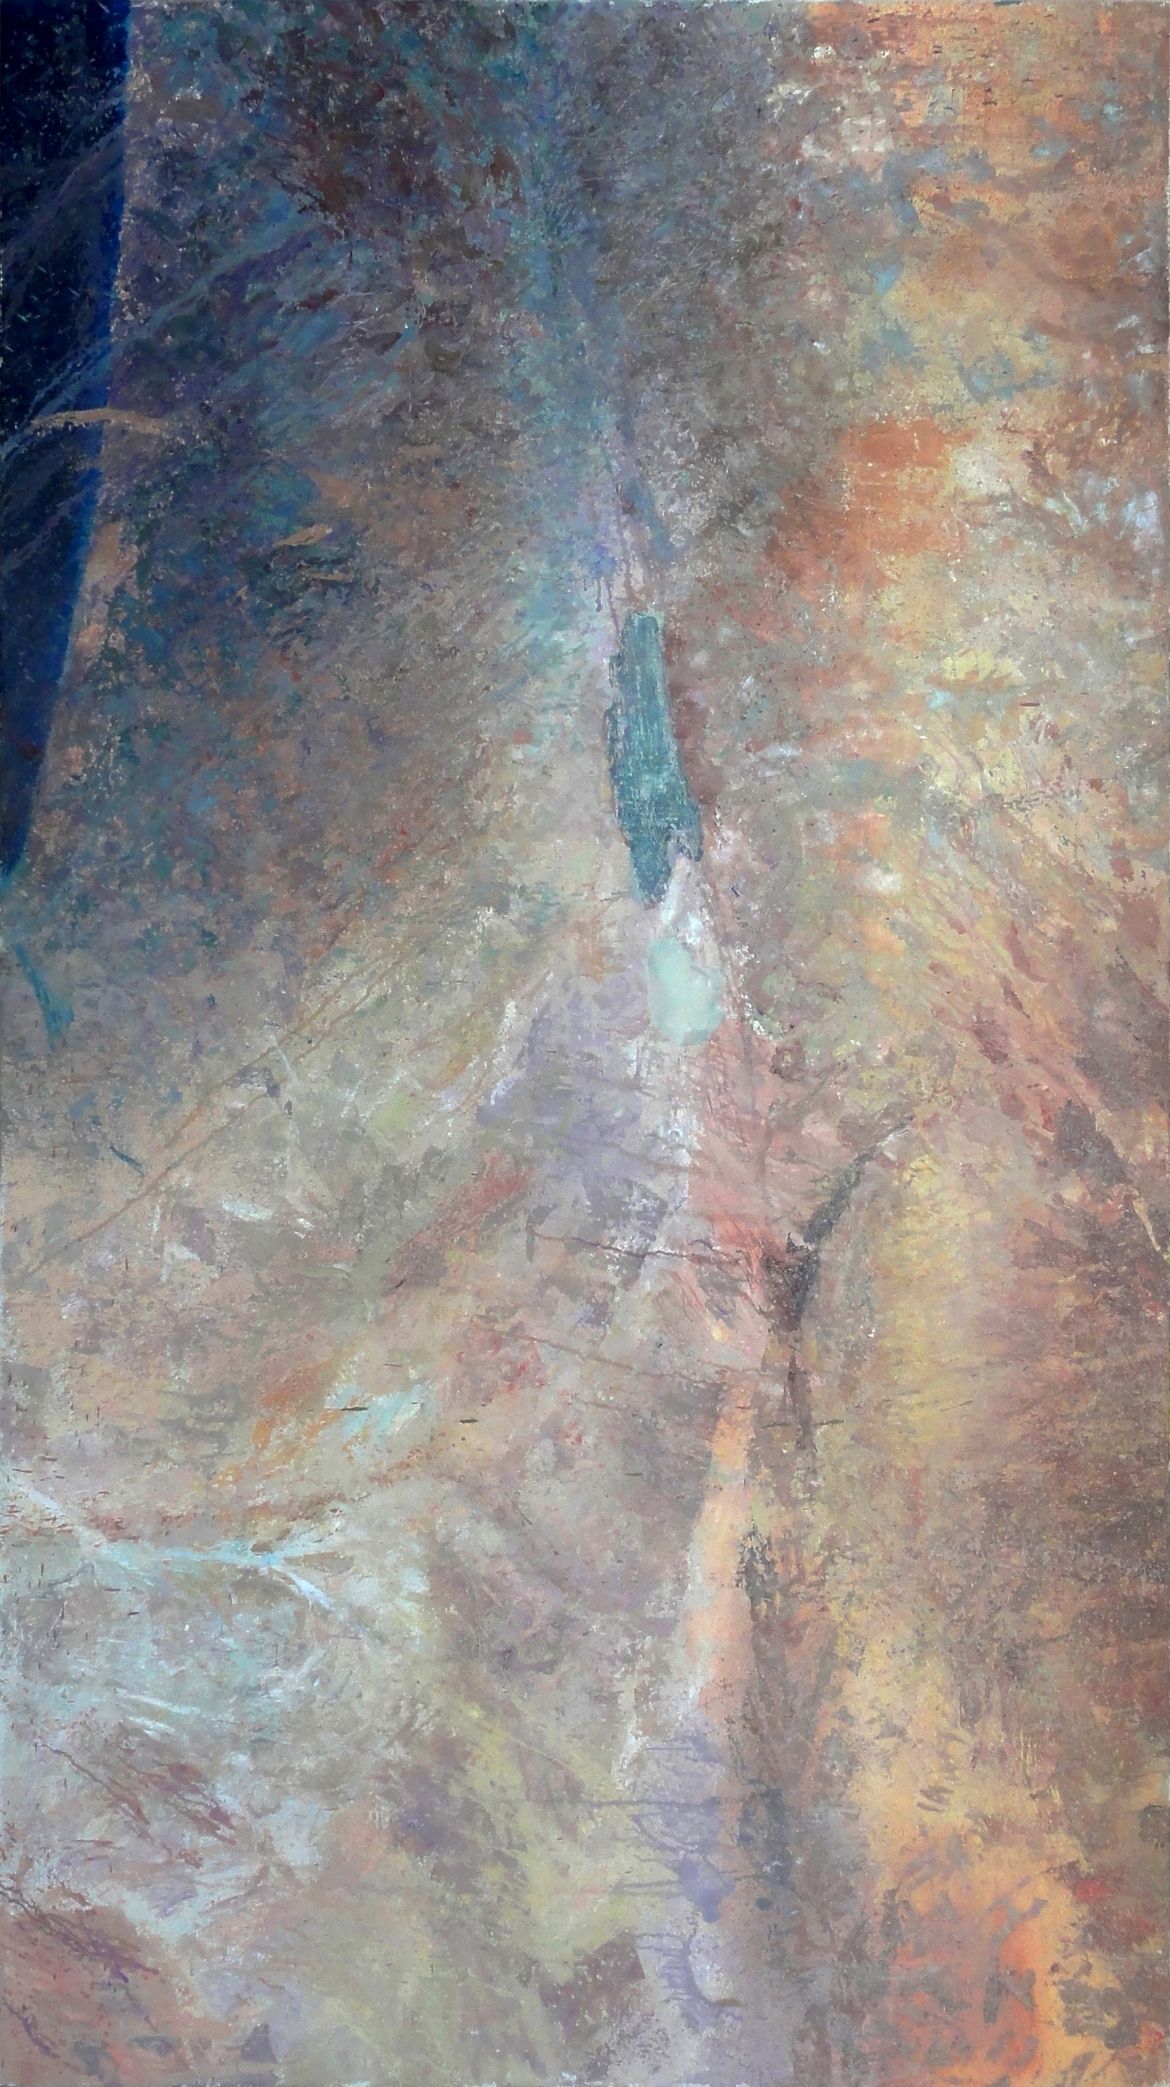 Ne/sveta dežela, 2011, olje na platno, 135 x 240 cm